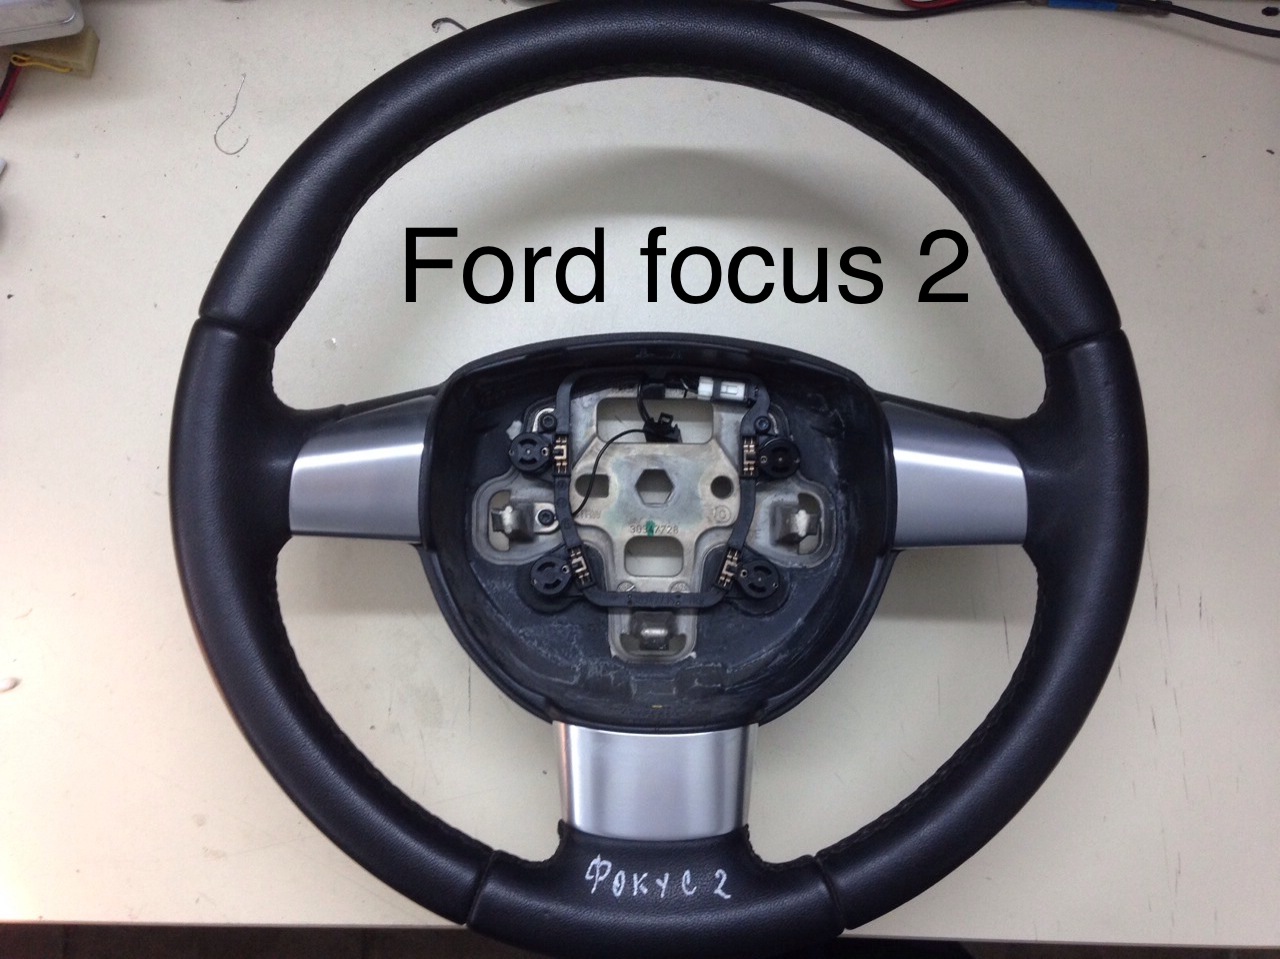 Продажа Ford Focus (Форд Фокус) в Краснодарском крае